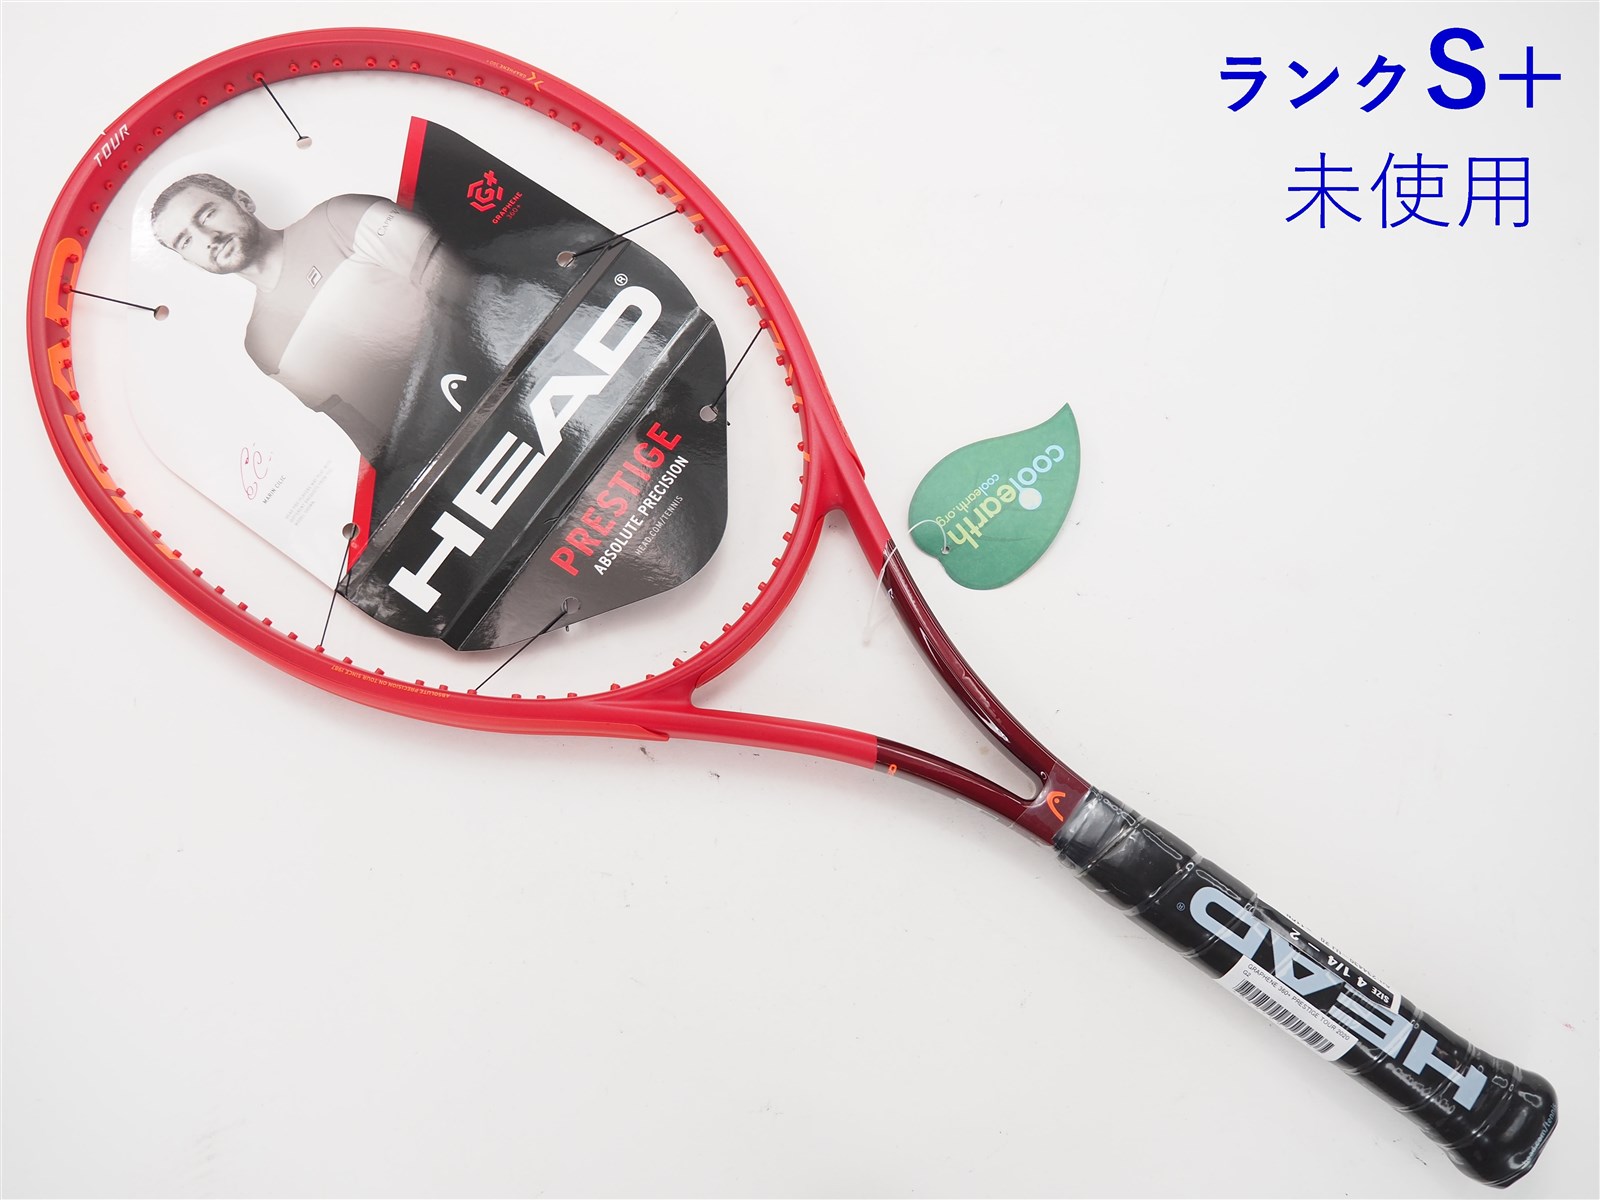 テニスラケット ヘッド グラフィン 360プラス プレステージ プロ 2020年モデル (G3)HEAD GRAPHENE 360+ PRESTIGE PRO 2020